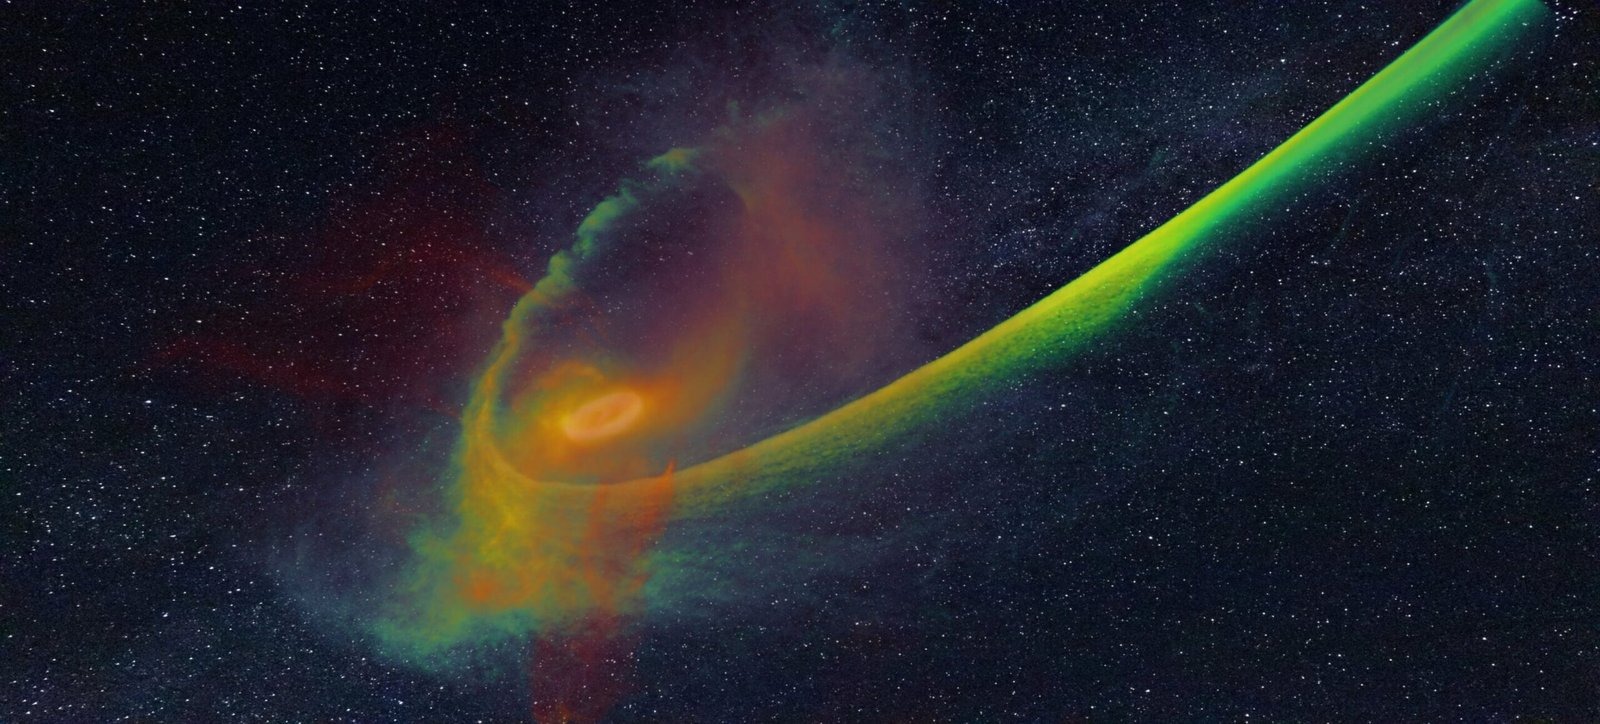 Ілюстрація моделювання розриву зірки на частини чорною дірою